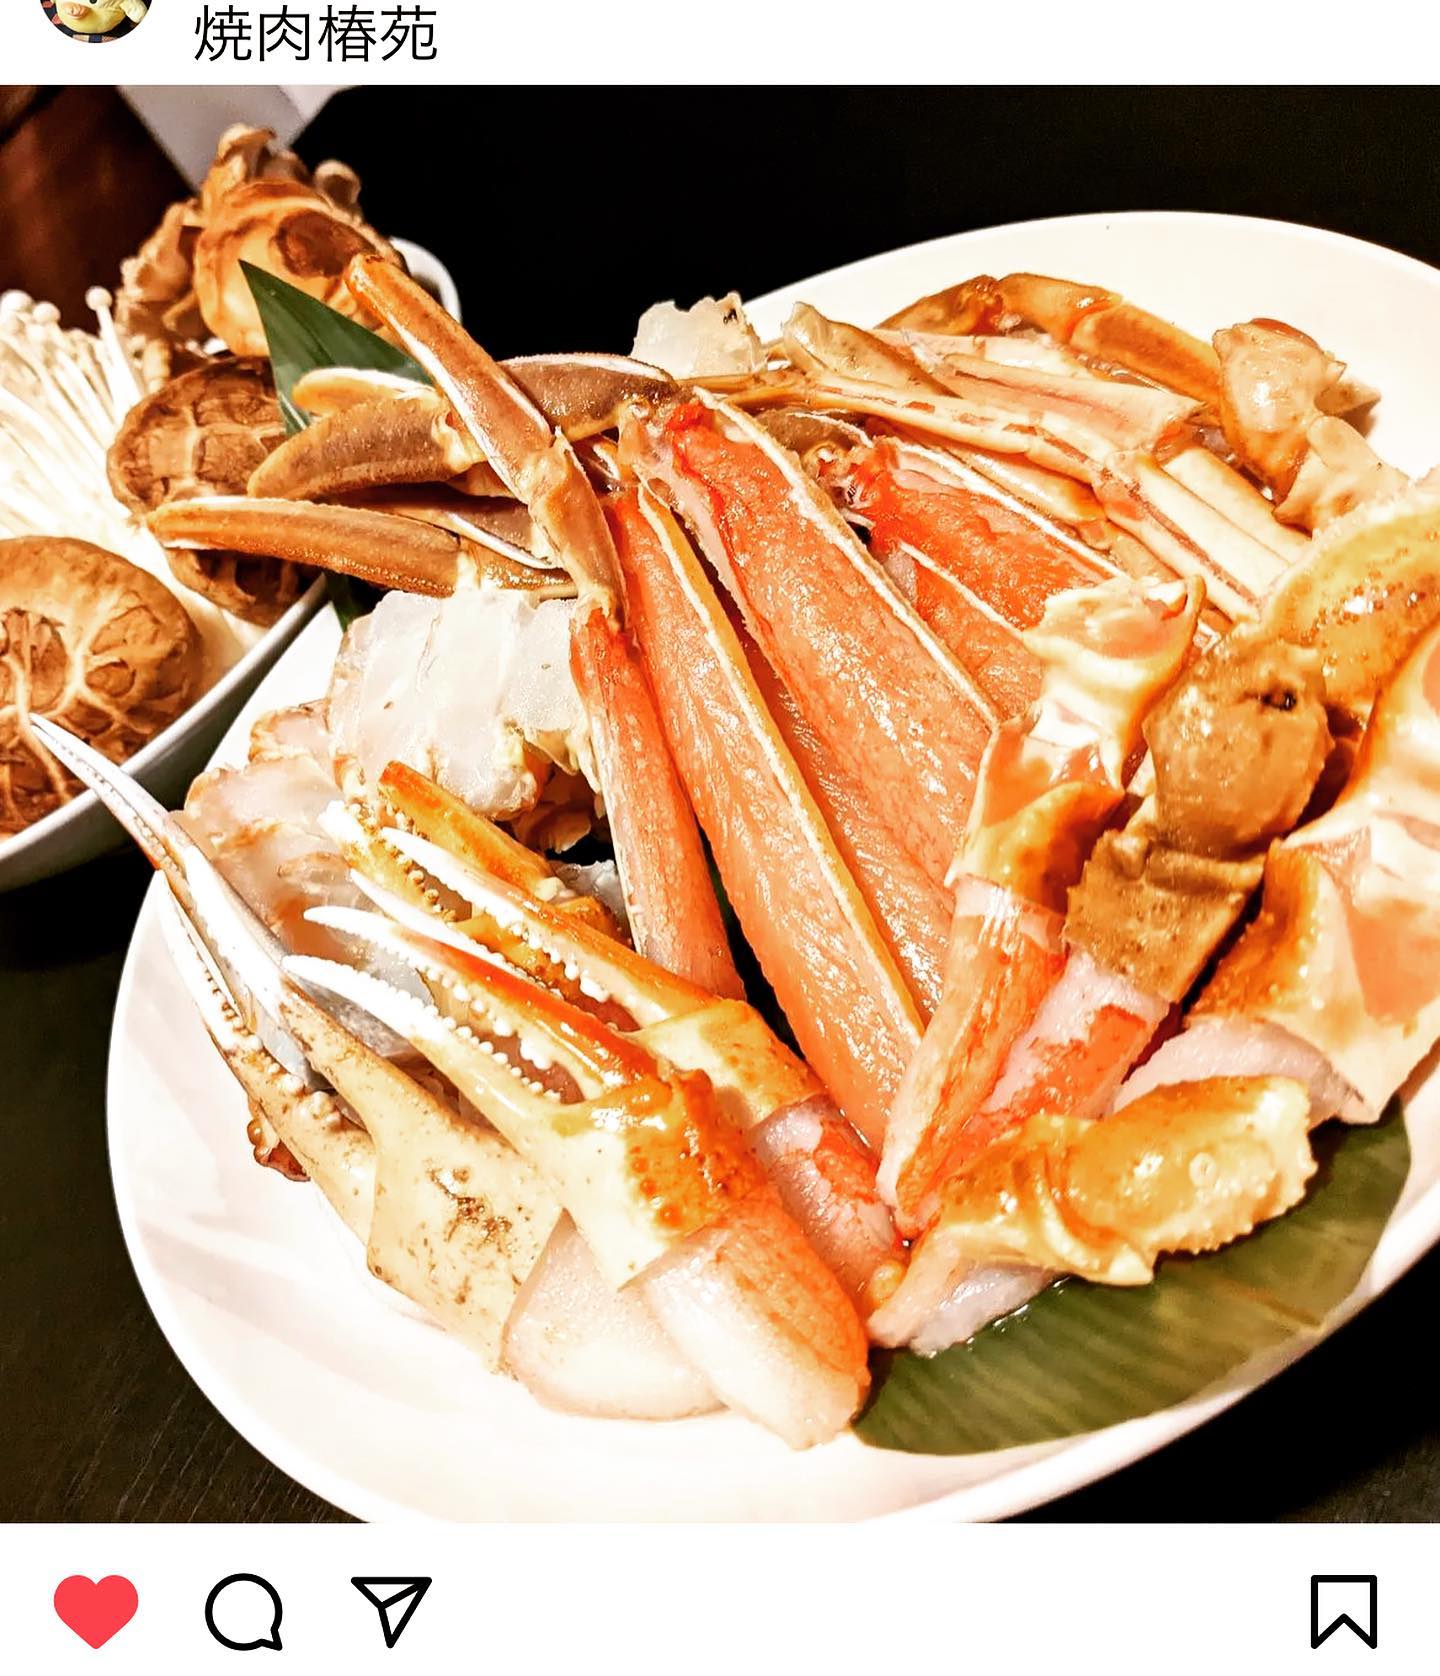 昨日から始まりました🥰
椿苑の蟹すきしゃぶ🦀

常連様に喜んでもらえて
まるさん嬉しい(〃^∇^)ﾉ♪

〆の雑炊がまぢ美味い

蟹好きは12月までに是非